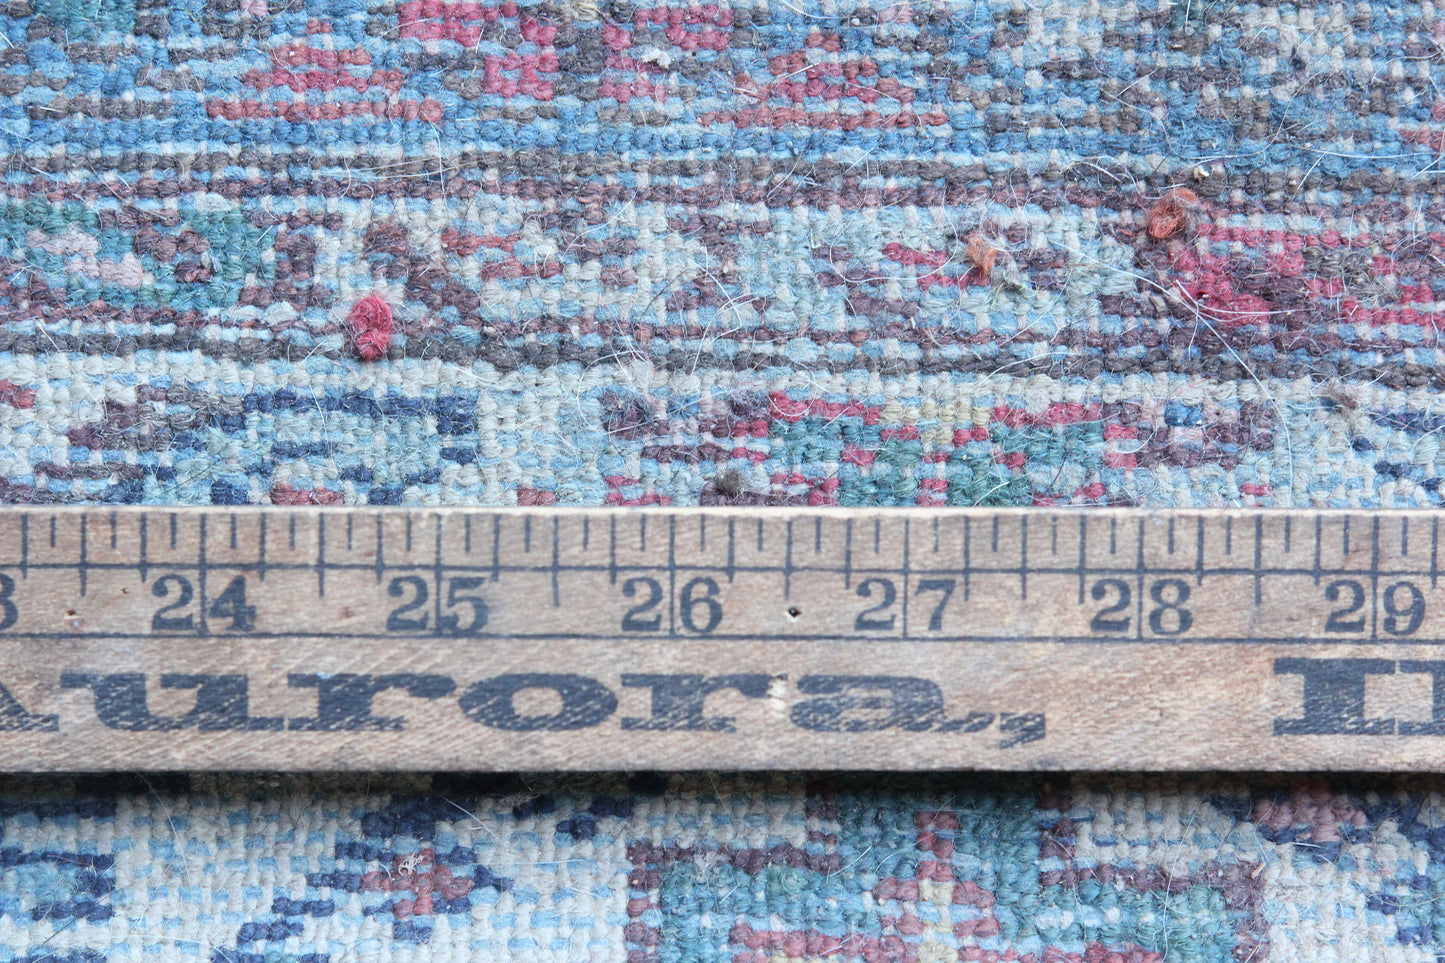 30" x 48" Vintage Handmade Rug